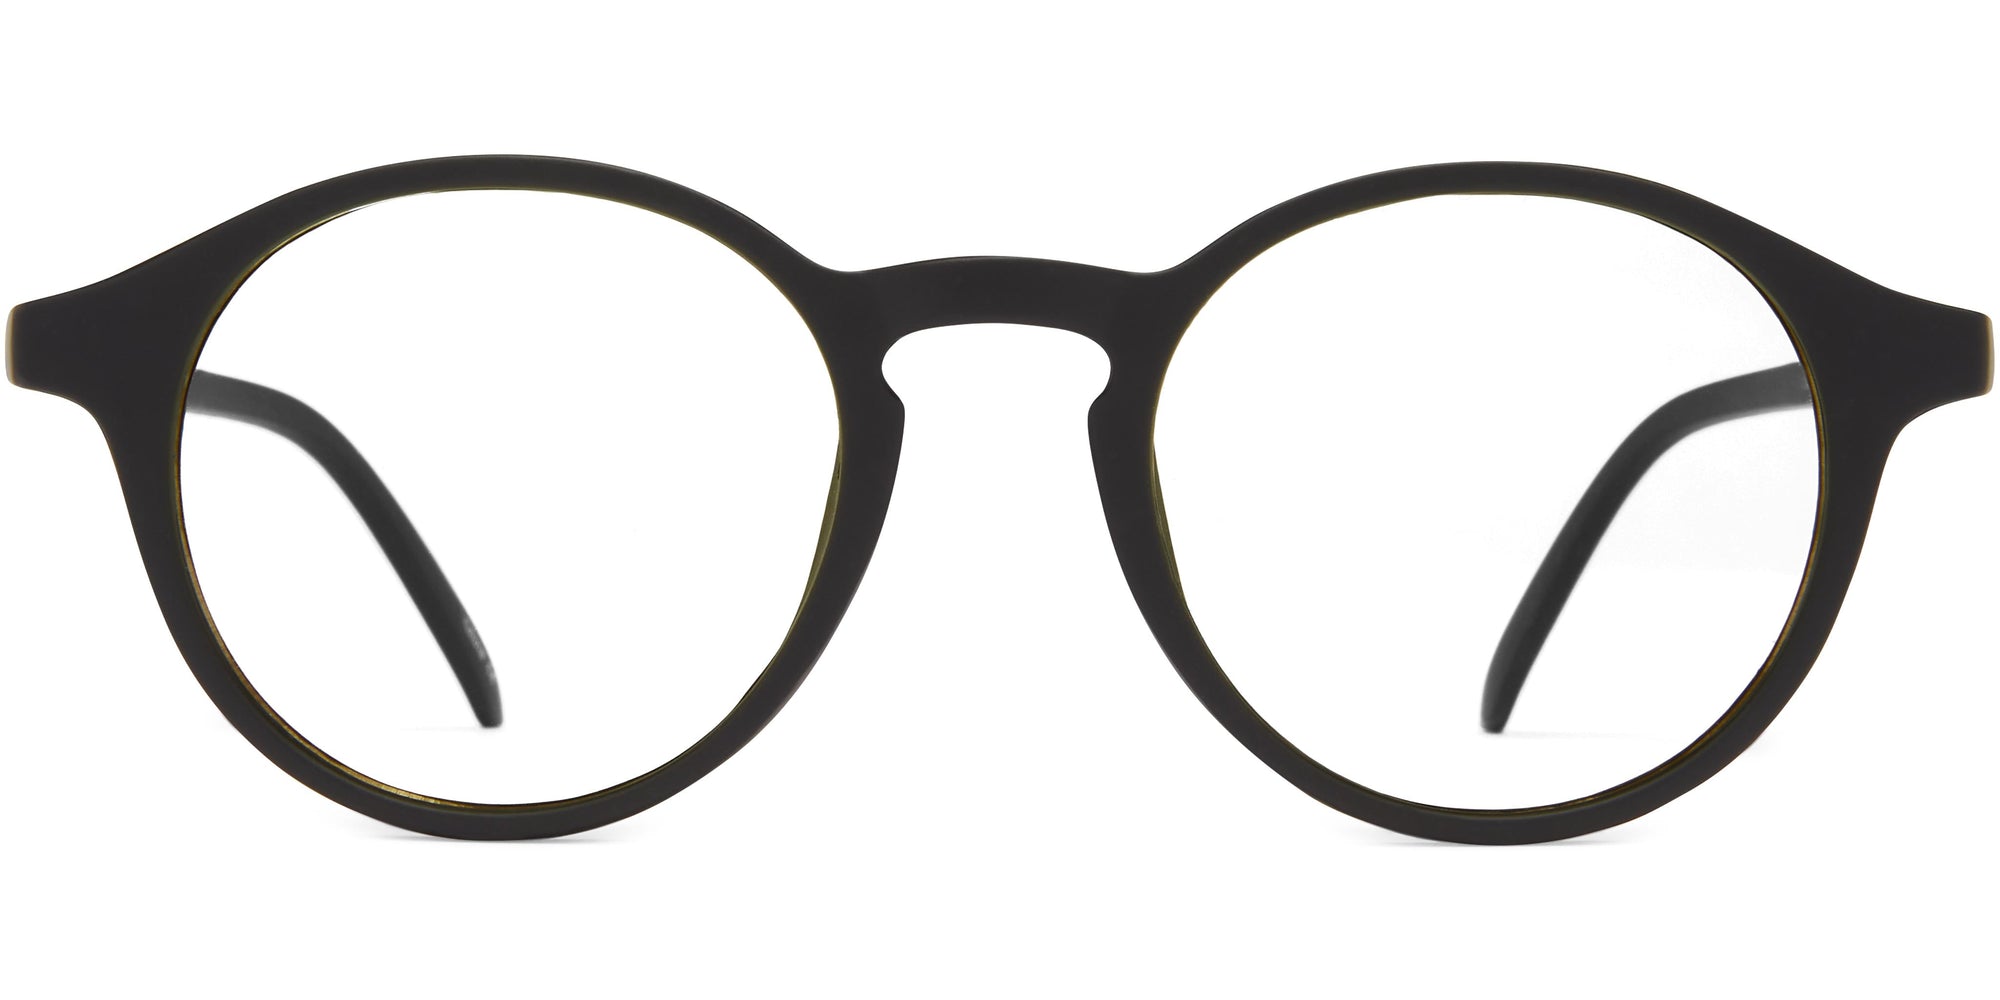 Rex - Black - Blue Light Glasses - Zero Magnification